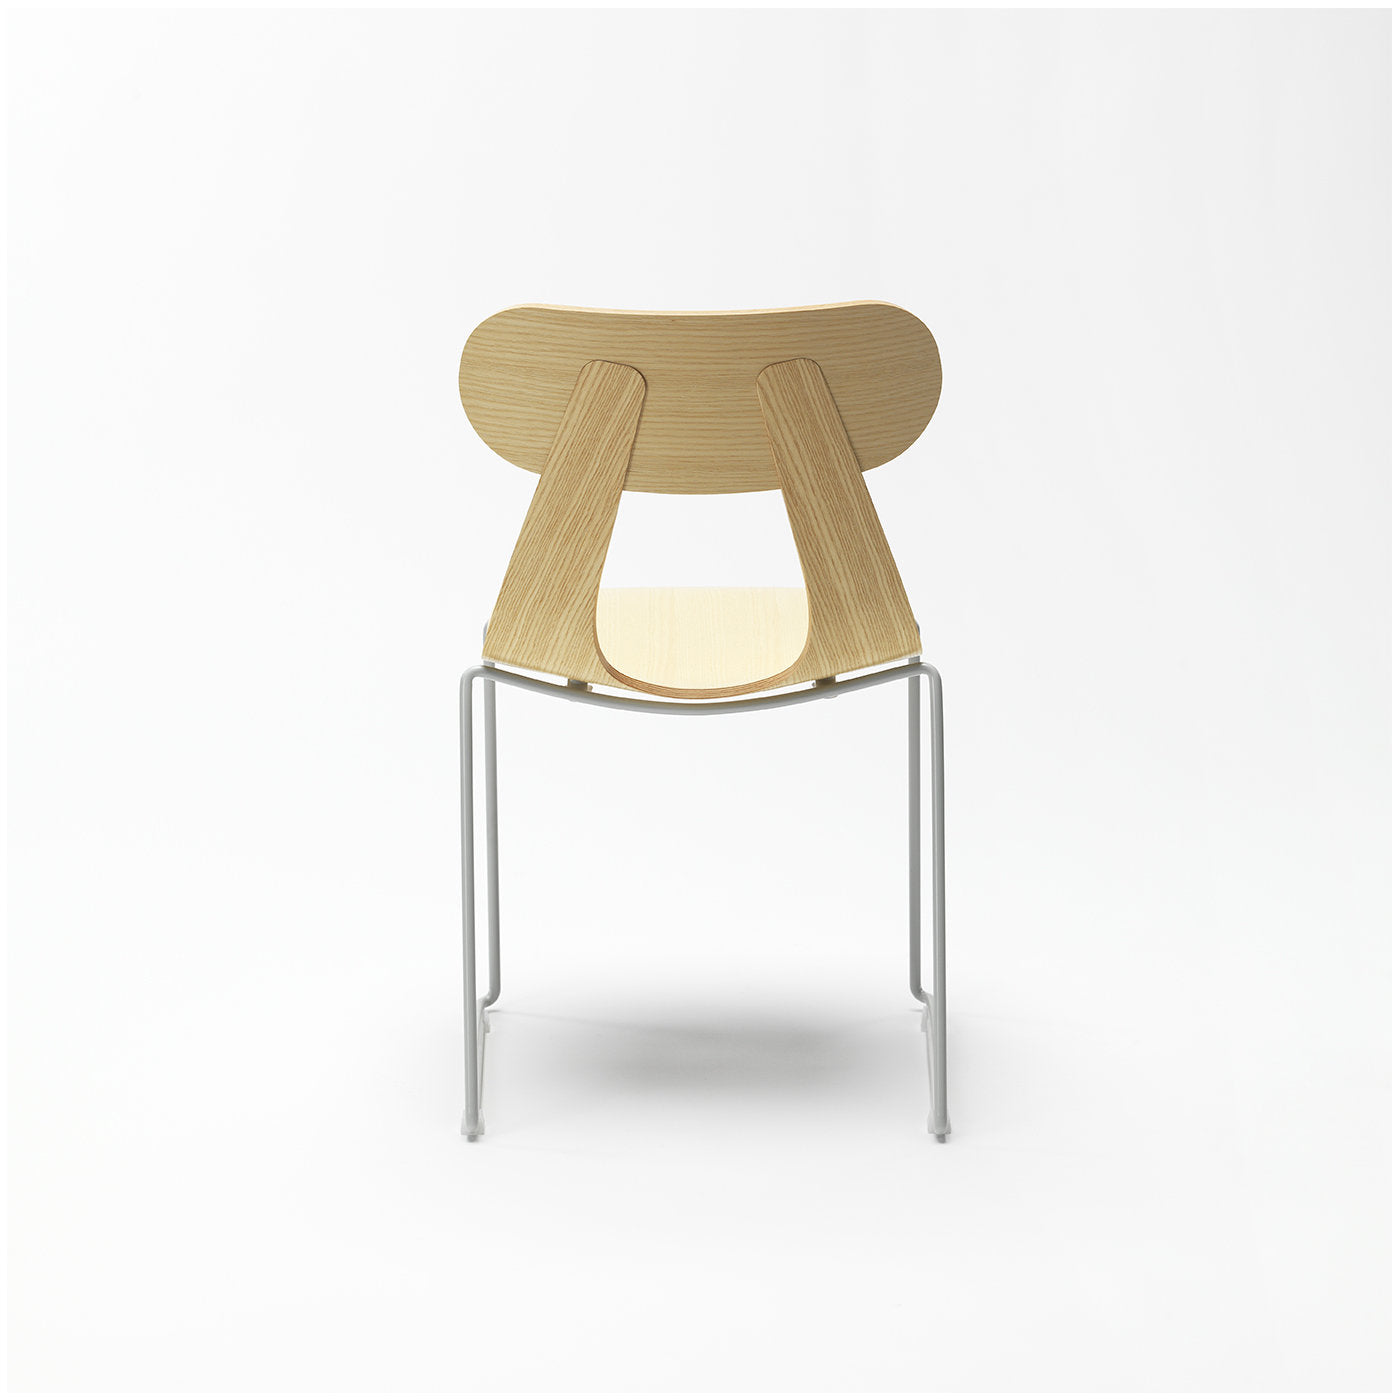 Set of 2 Rapa Metal Chairs by Mentsen - Alternative view 3